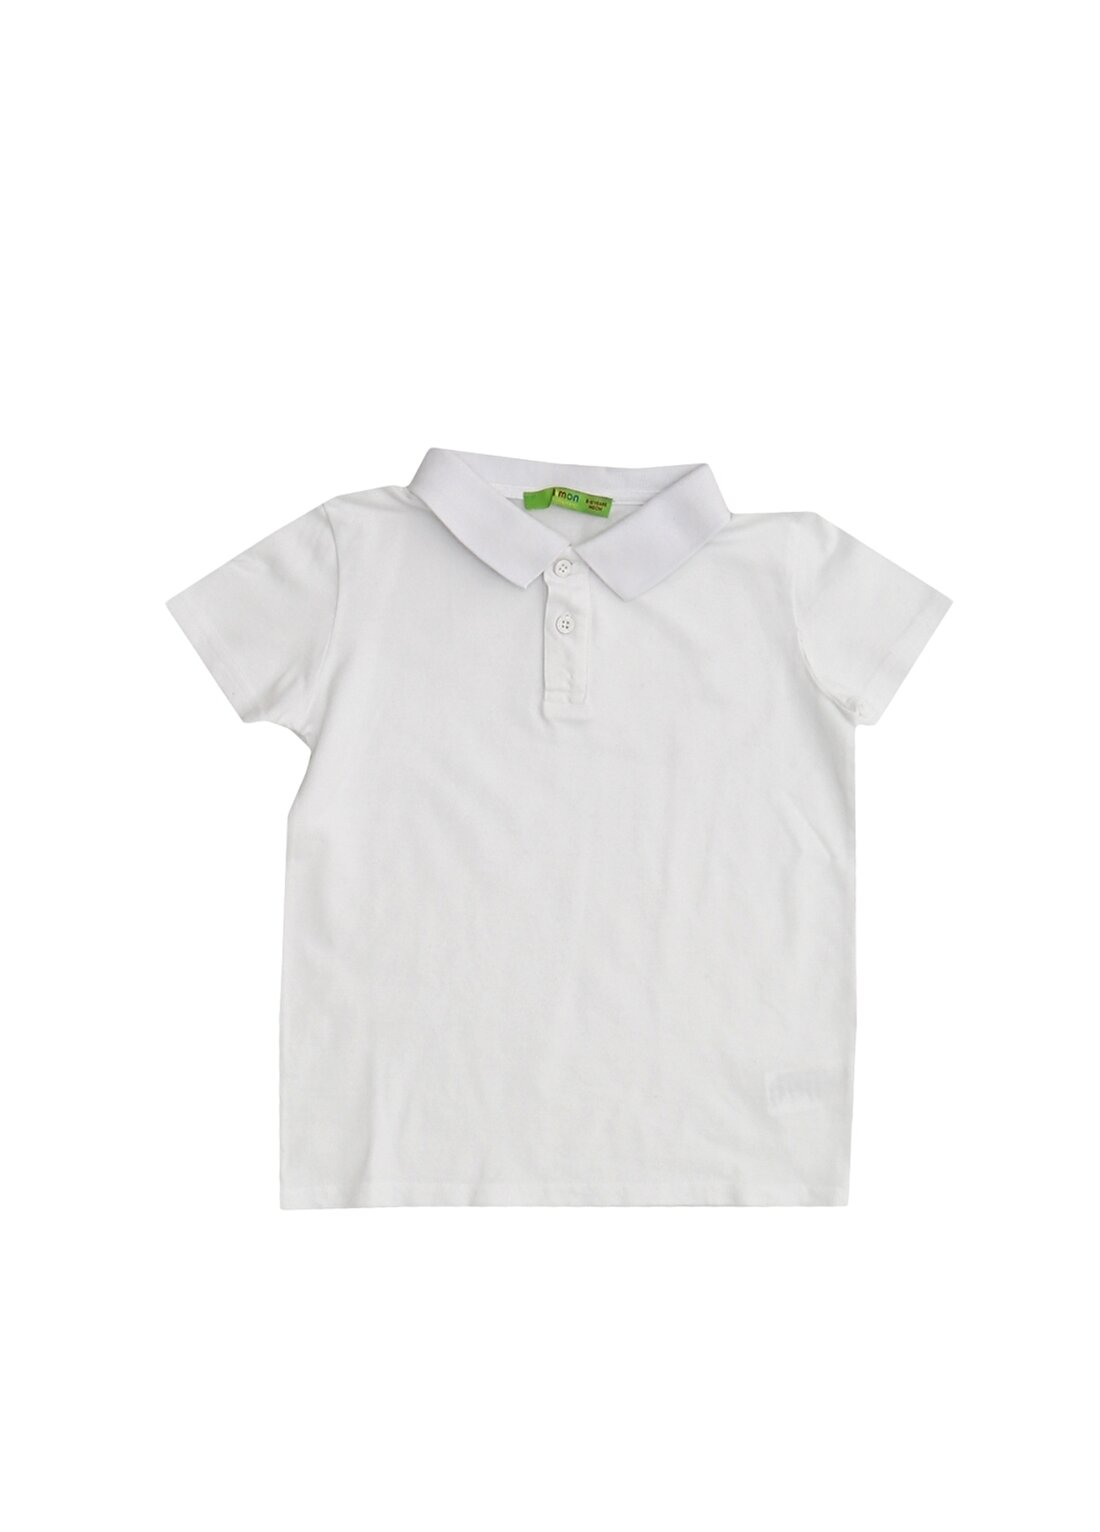 Limon Erkek Çocuk Polo Yaka Beyaz T-Shirt